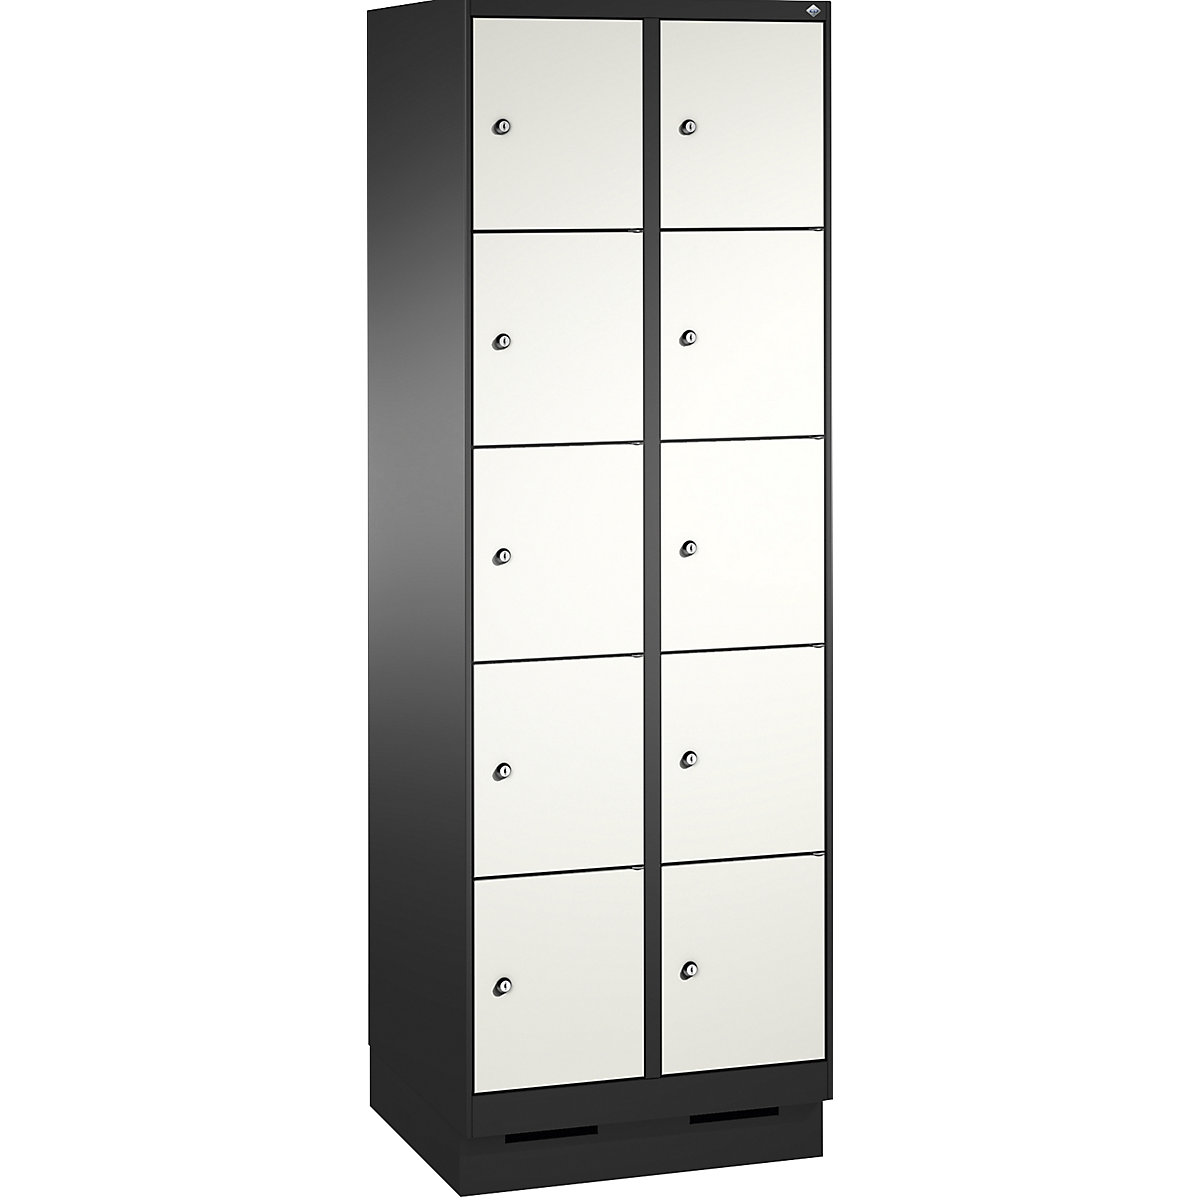 Armoire à casiers sur socle EVOLO – C+P, 2 compartiments, 5 casiers chacun, largeur compartiments 300 mm, gris noir / blanc trafic-6